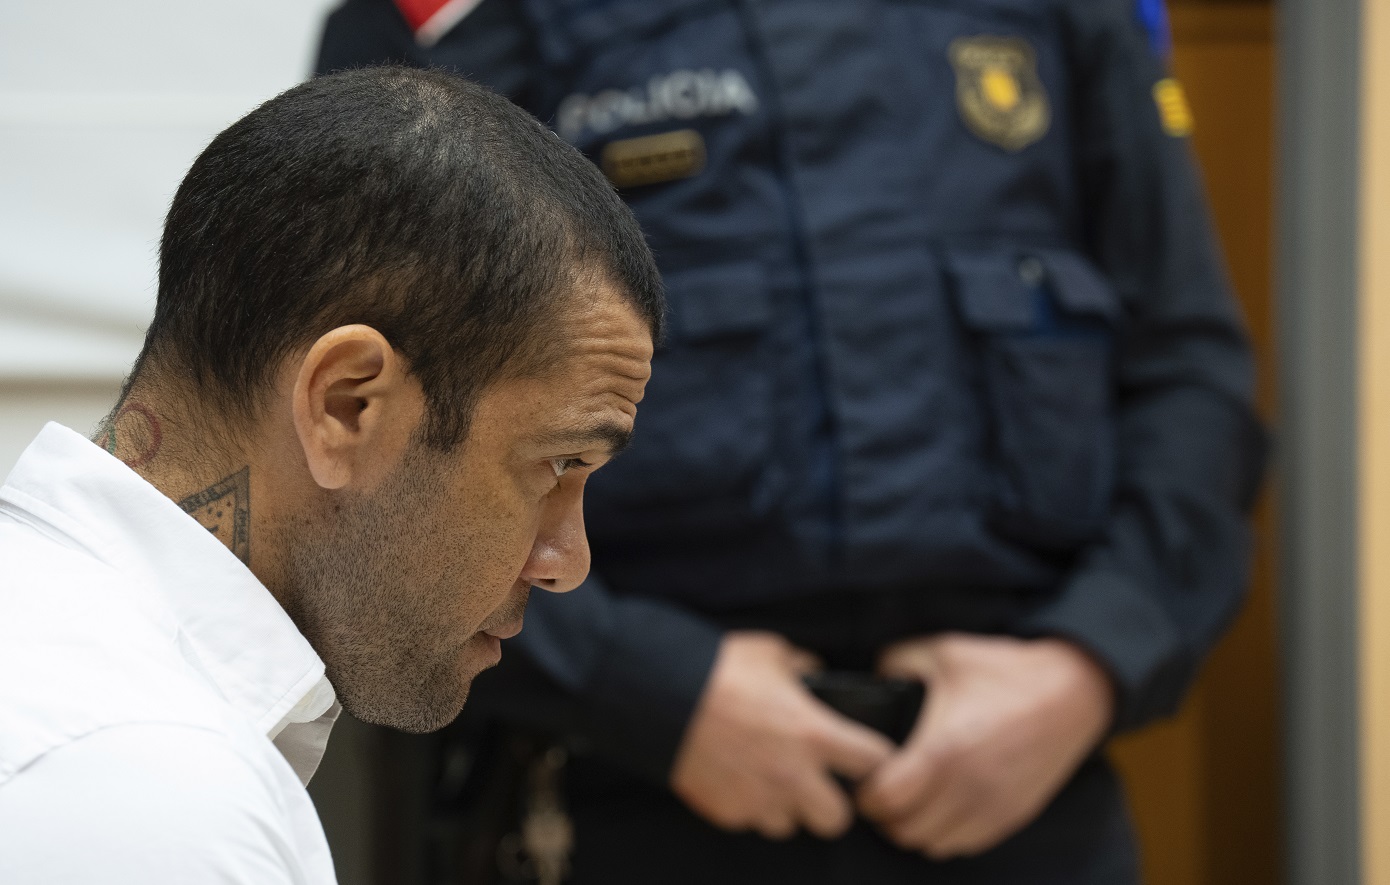 Ντάνι Άλβες: Αρνητική απάντηση στο αίτημα για προσωρινή αποφυλάκισή του